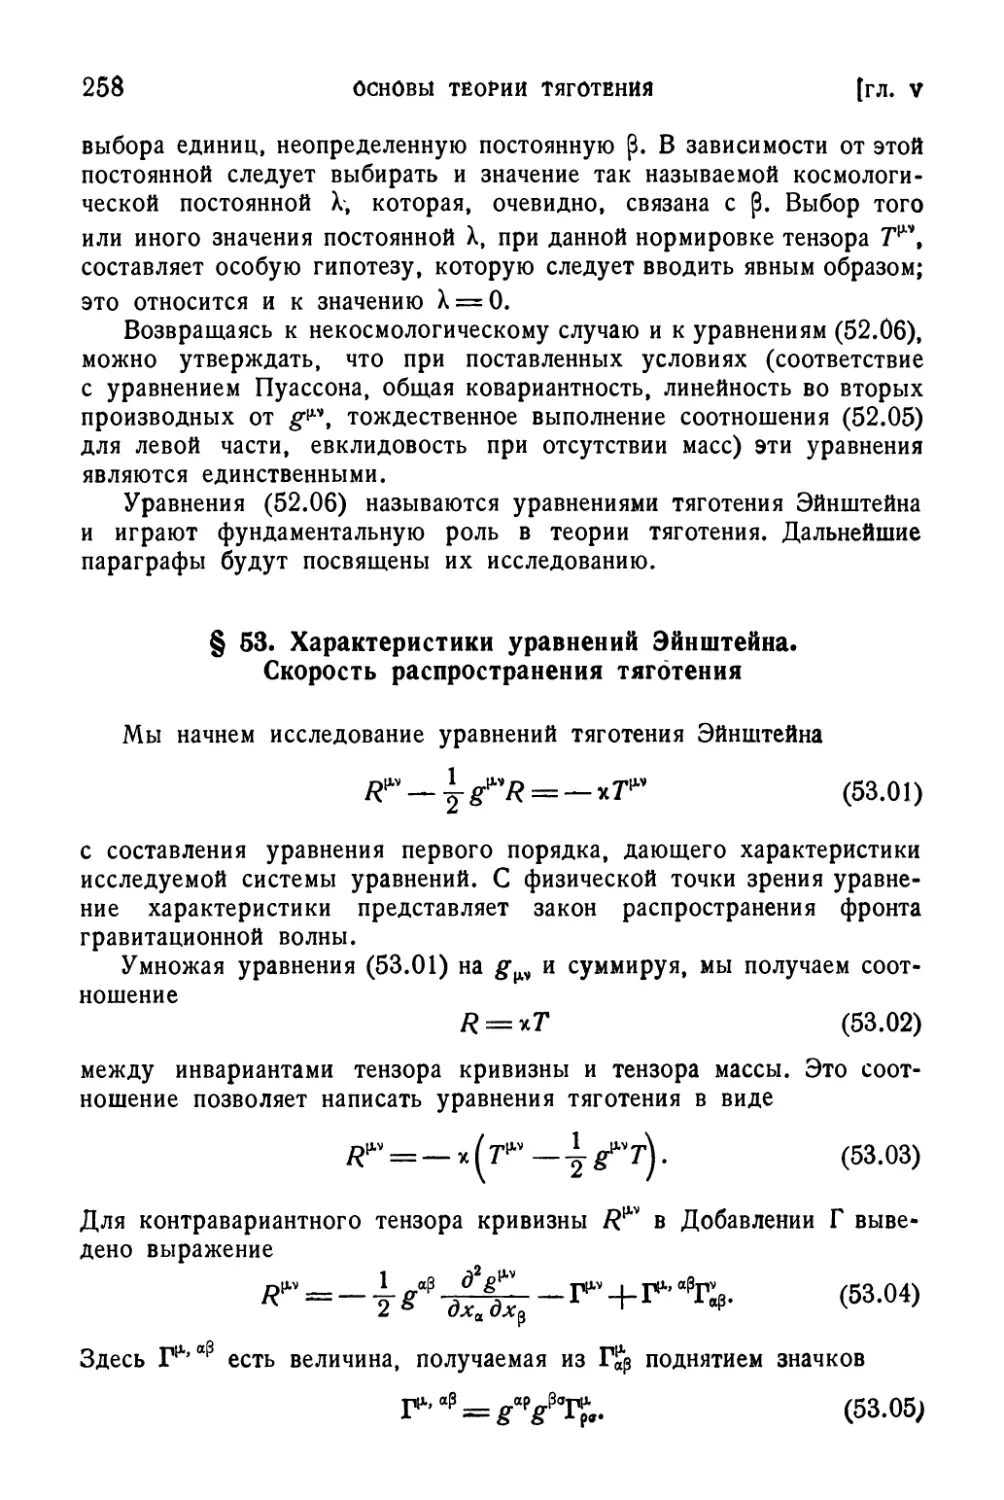 § 53. Характеристики уравнений Эйнштейна. Скорость распространения тяготения